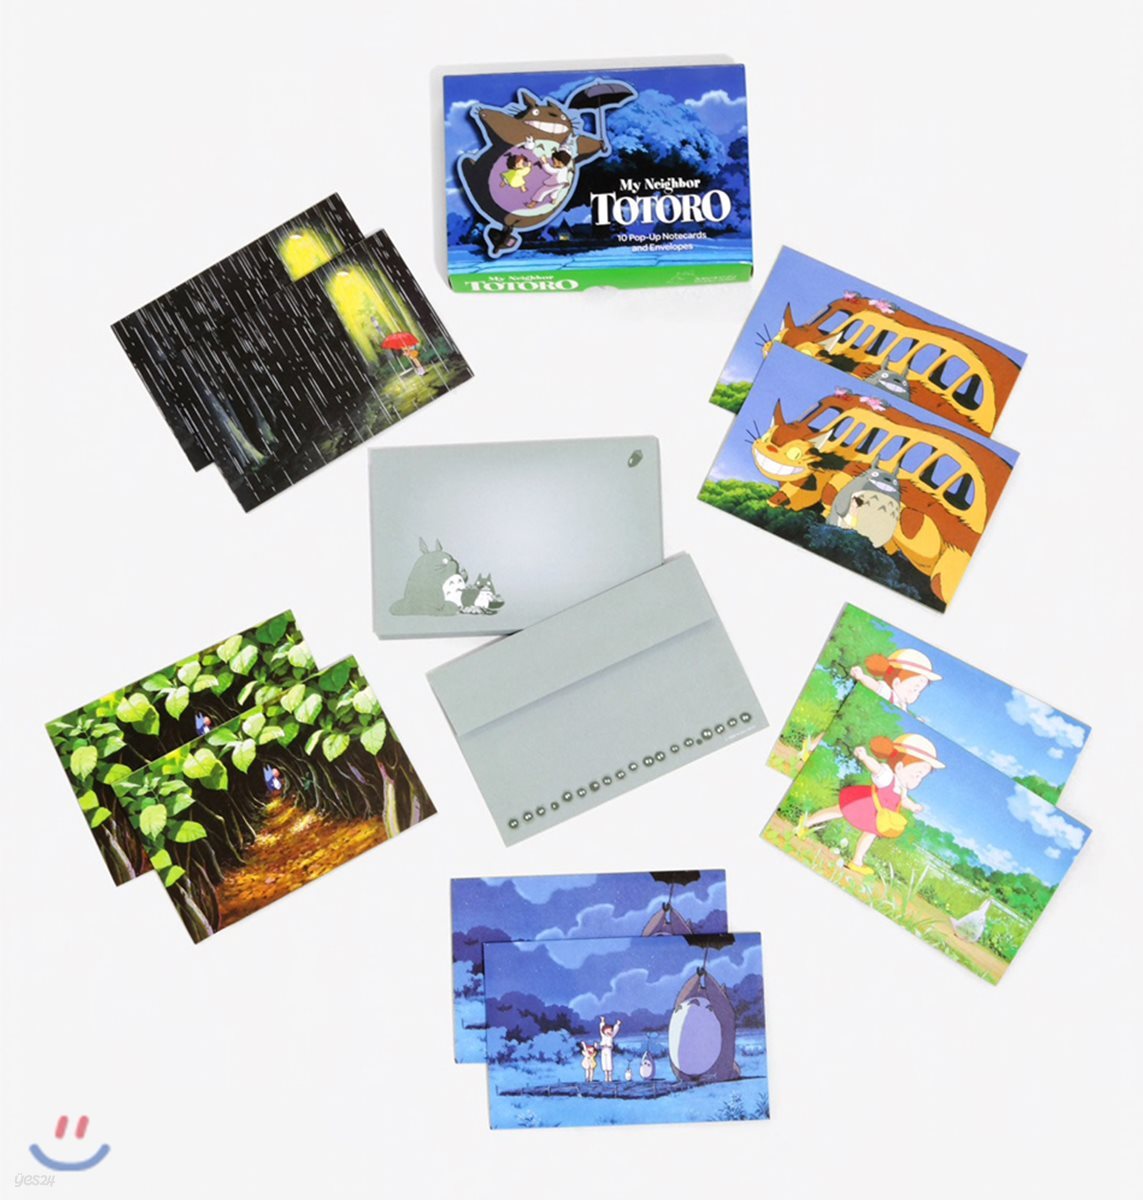 이웃집 토토로 팝업 카드 세트 (봉투 포함) : My Neighbor Totoro : 10 Pop-Up Notecards and Envelopes